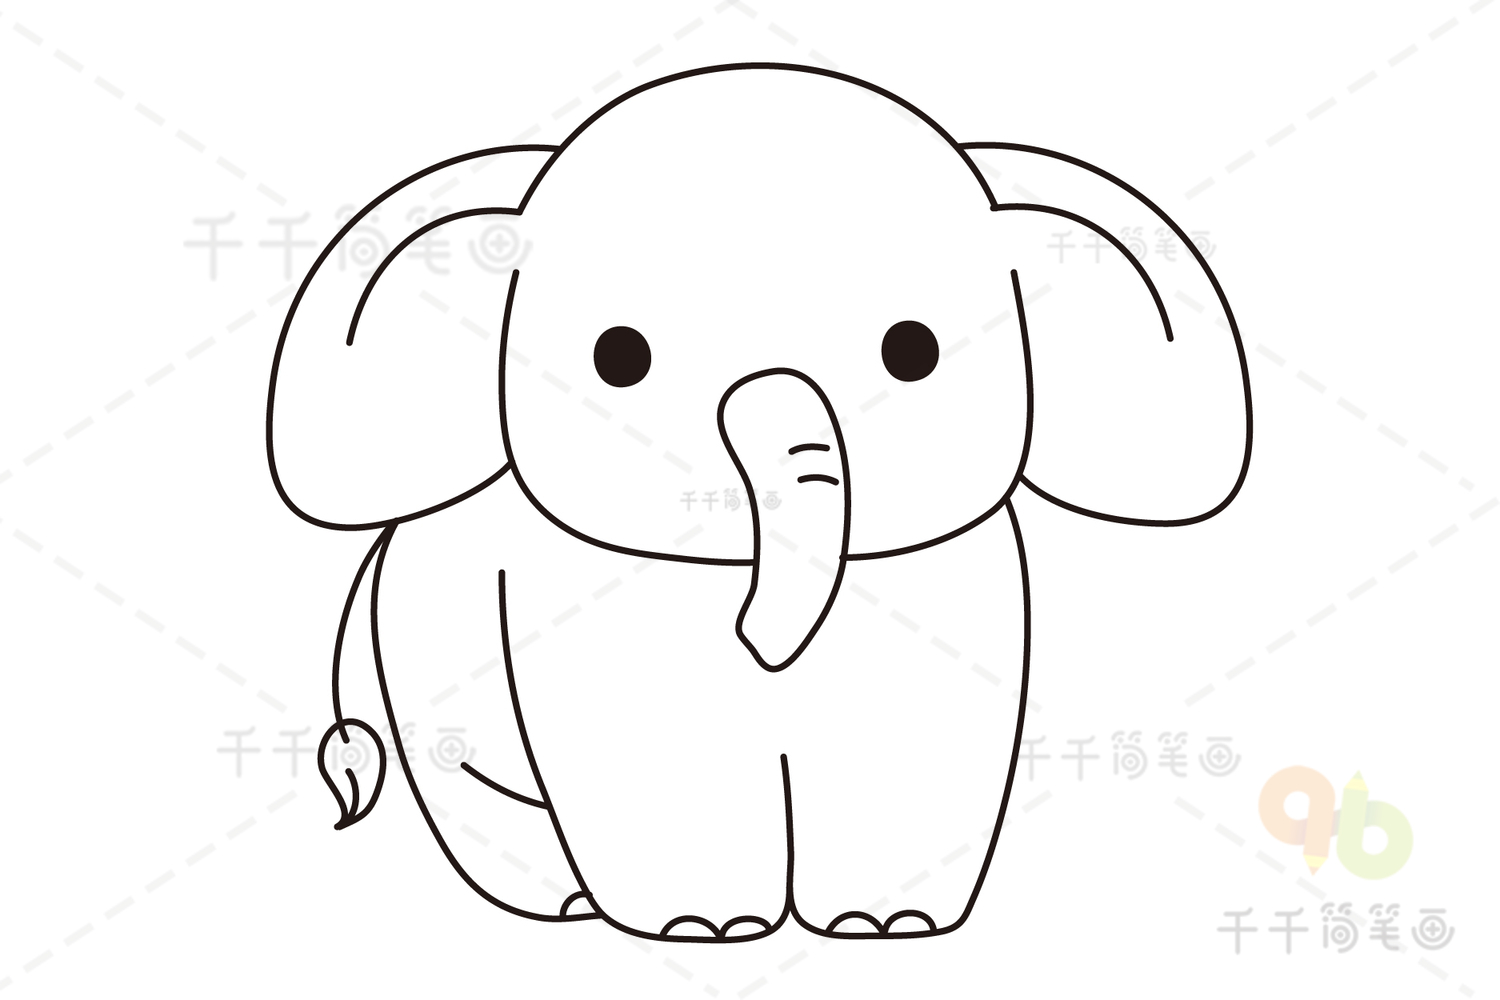 第二步:接着画出可爱的大象的身子.第一步:先画出可爱的大象的脸.